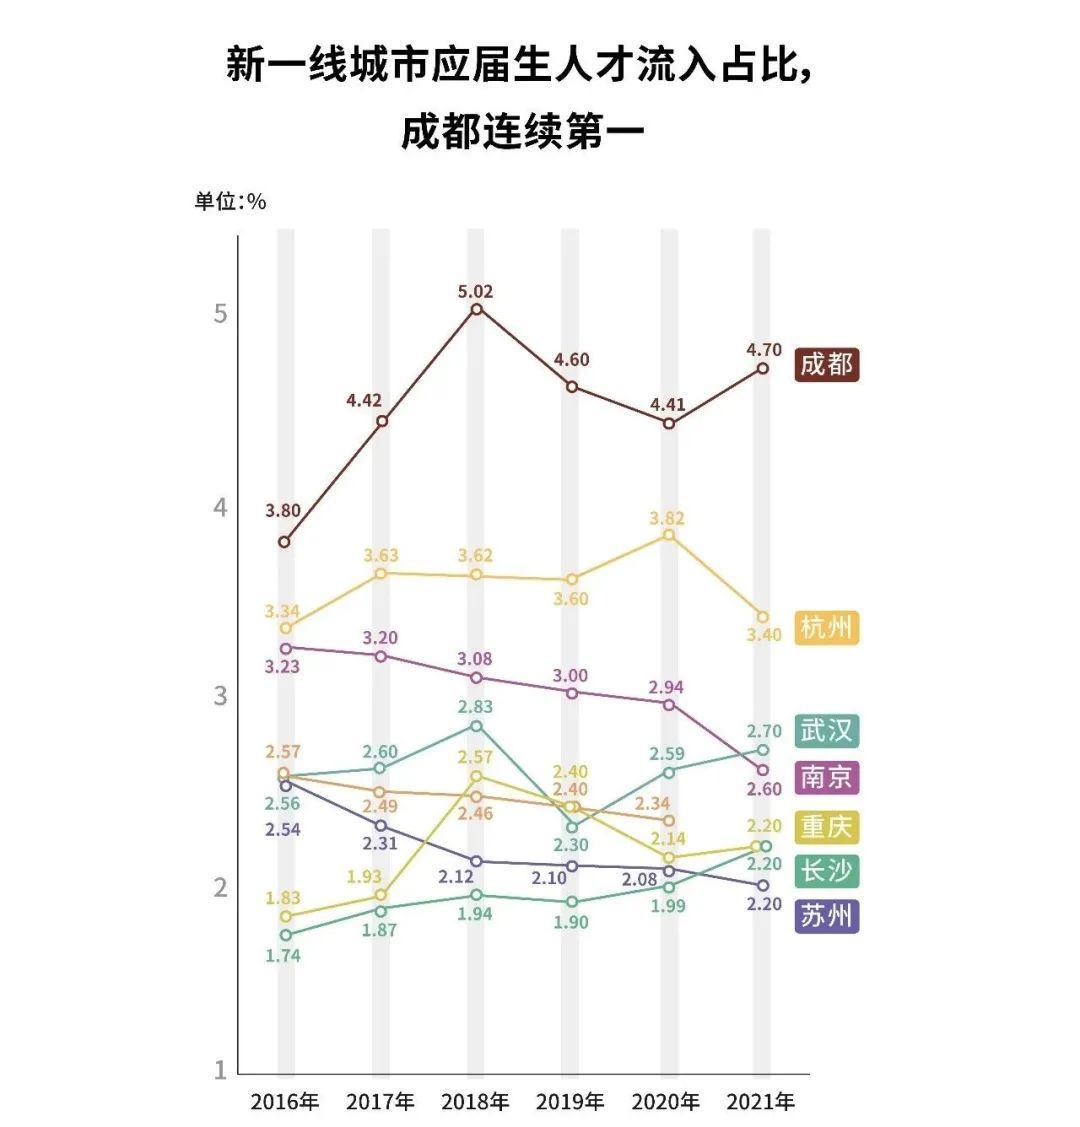 ▲数据来源：智联招聘2016-2021年《中国城市人才吸引力排名》